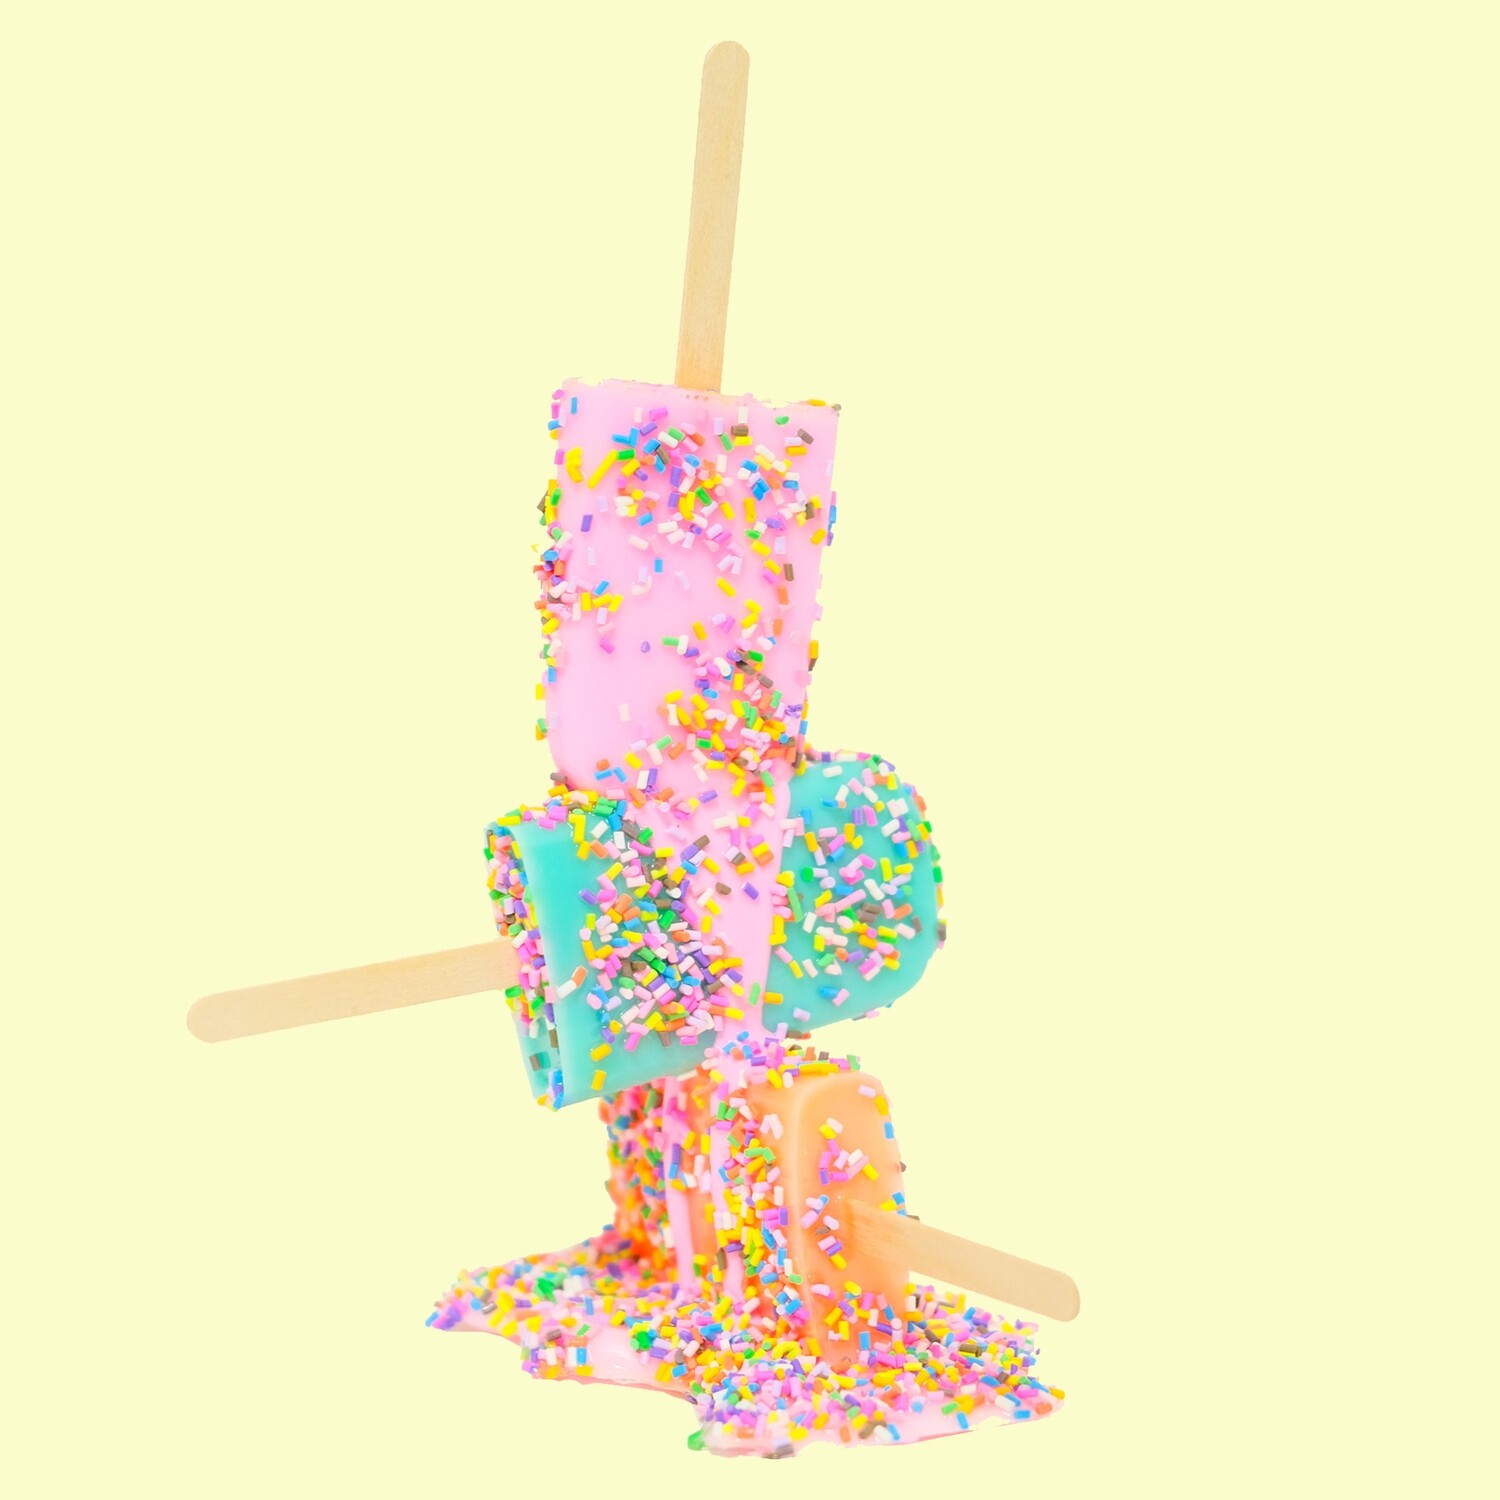 Melting Popsicle Art - Stacktastic - Original Melting Pops